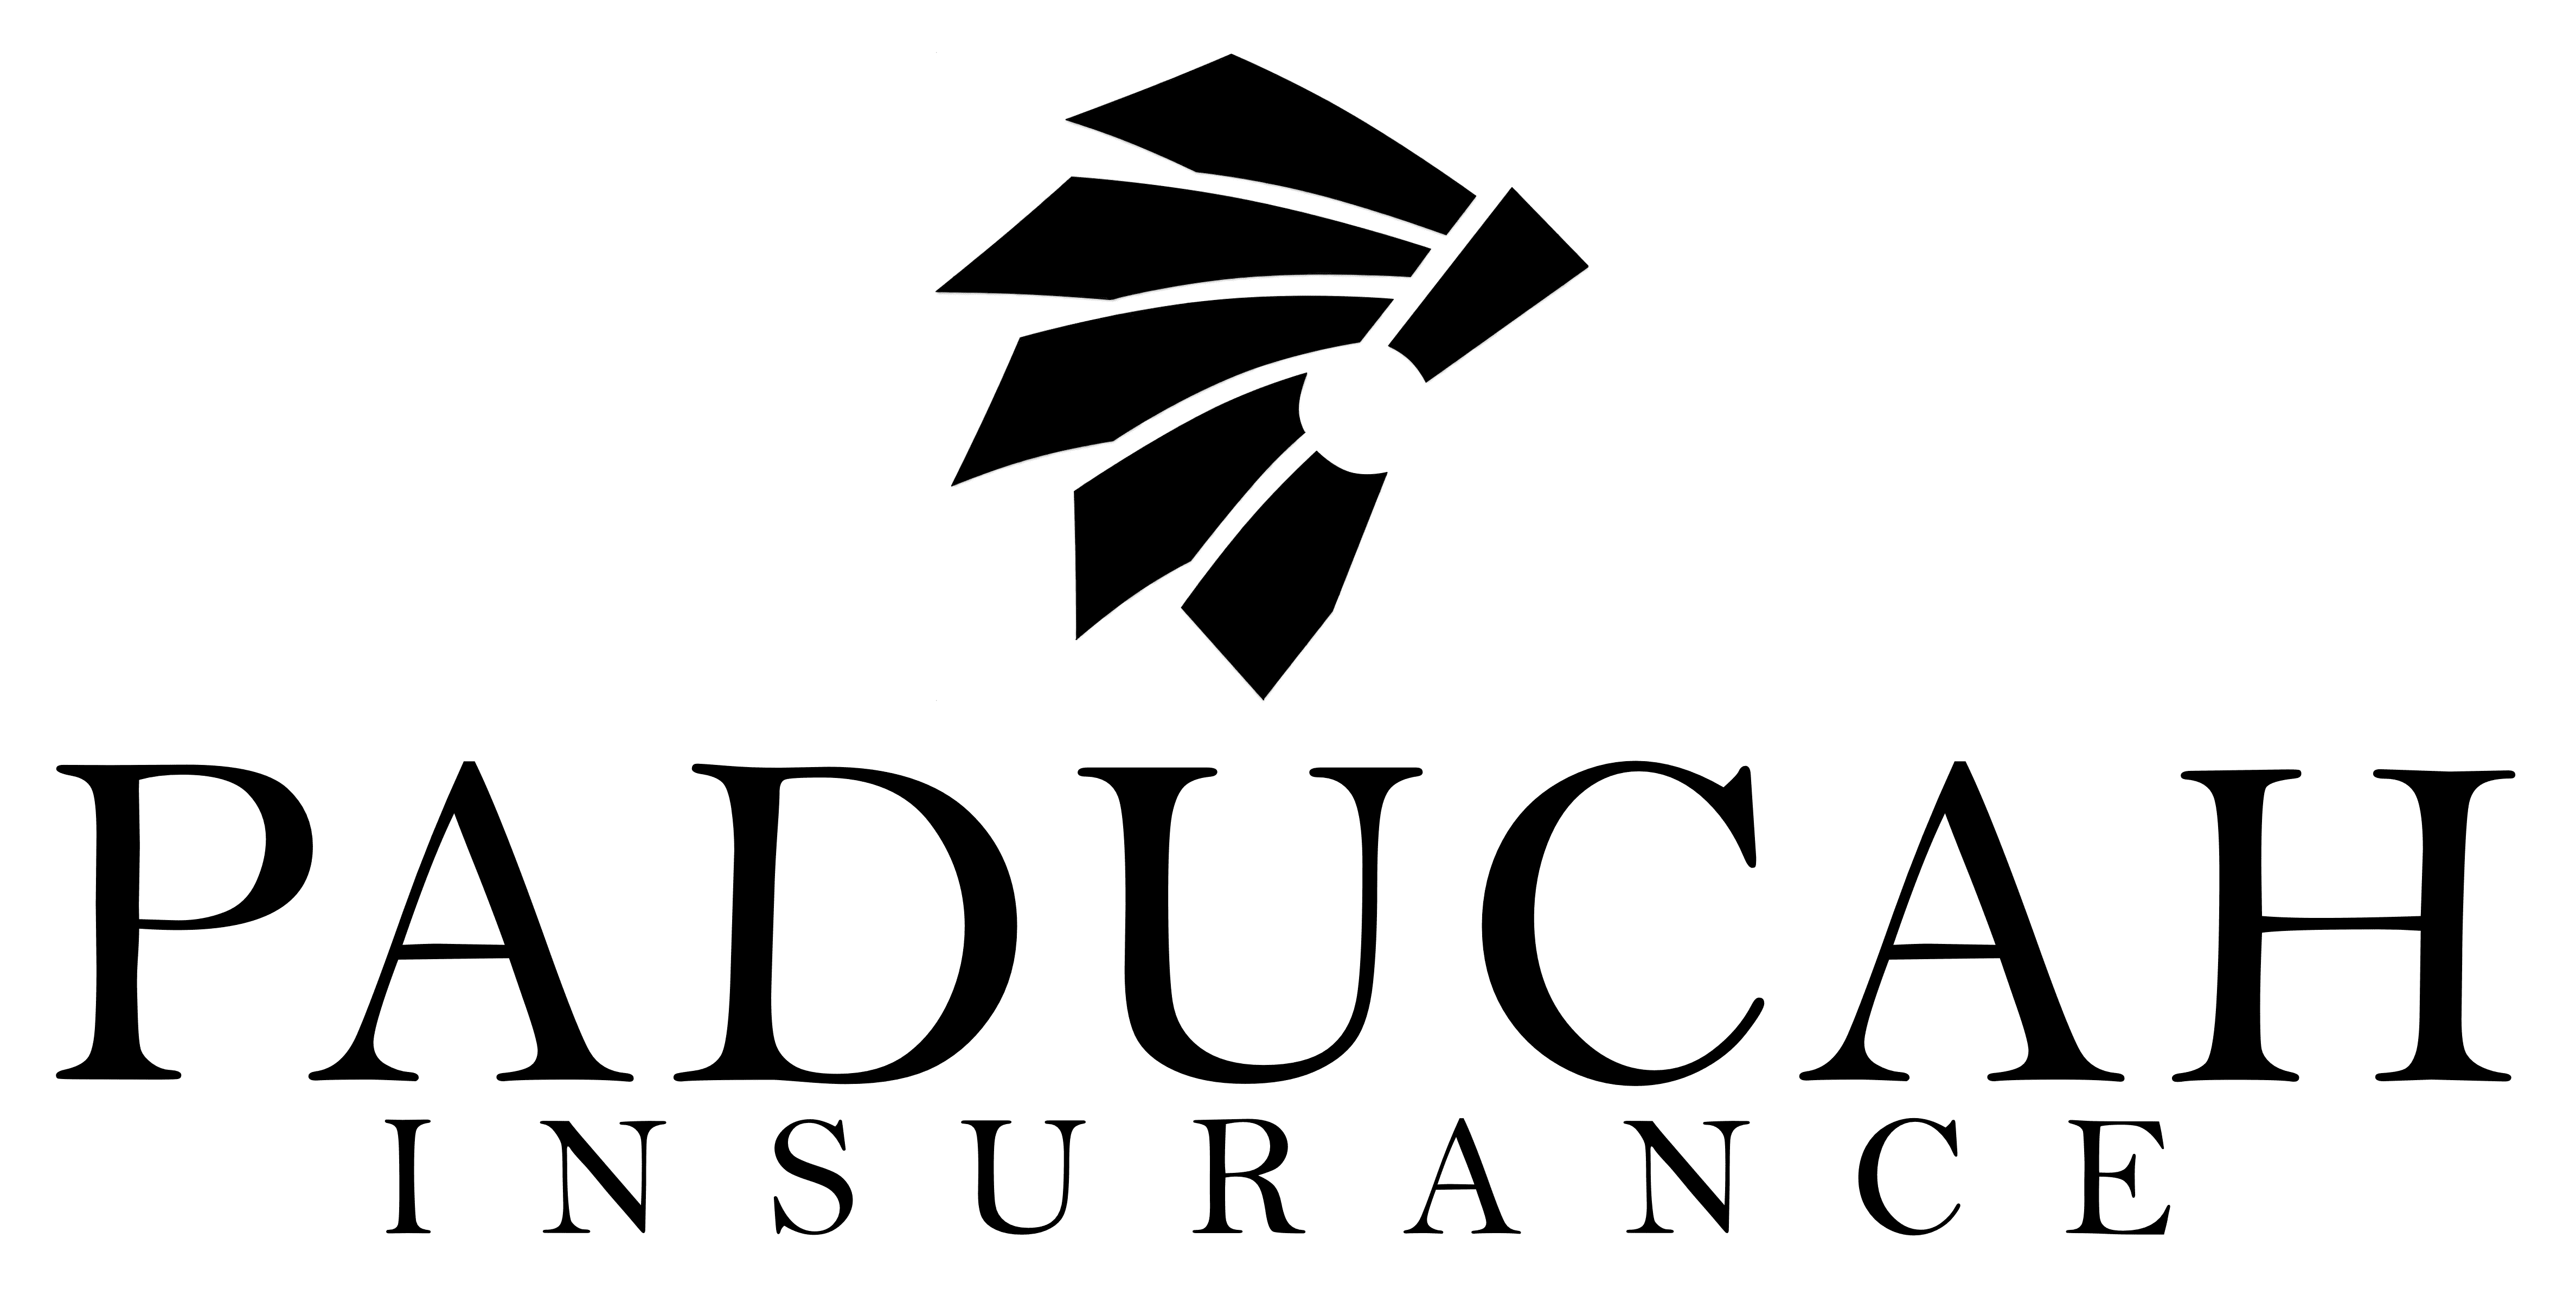 Paducah Insurance Agency, LLC logo